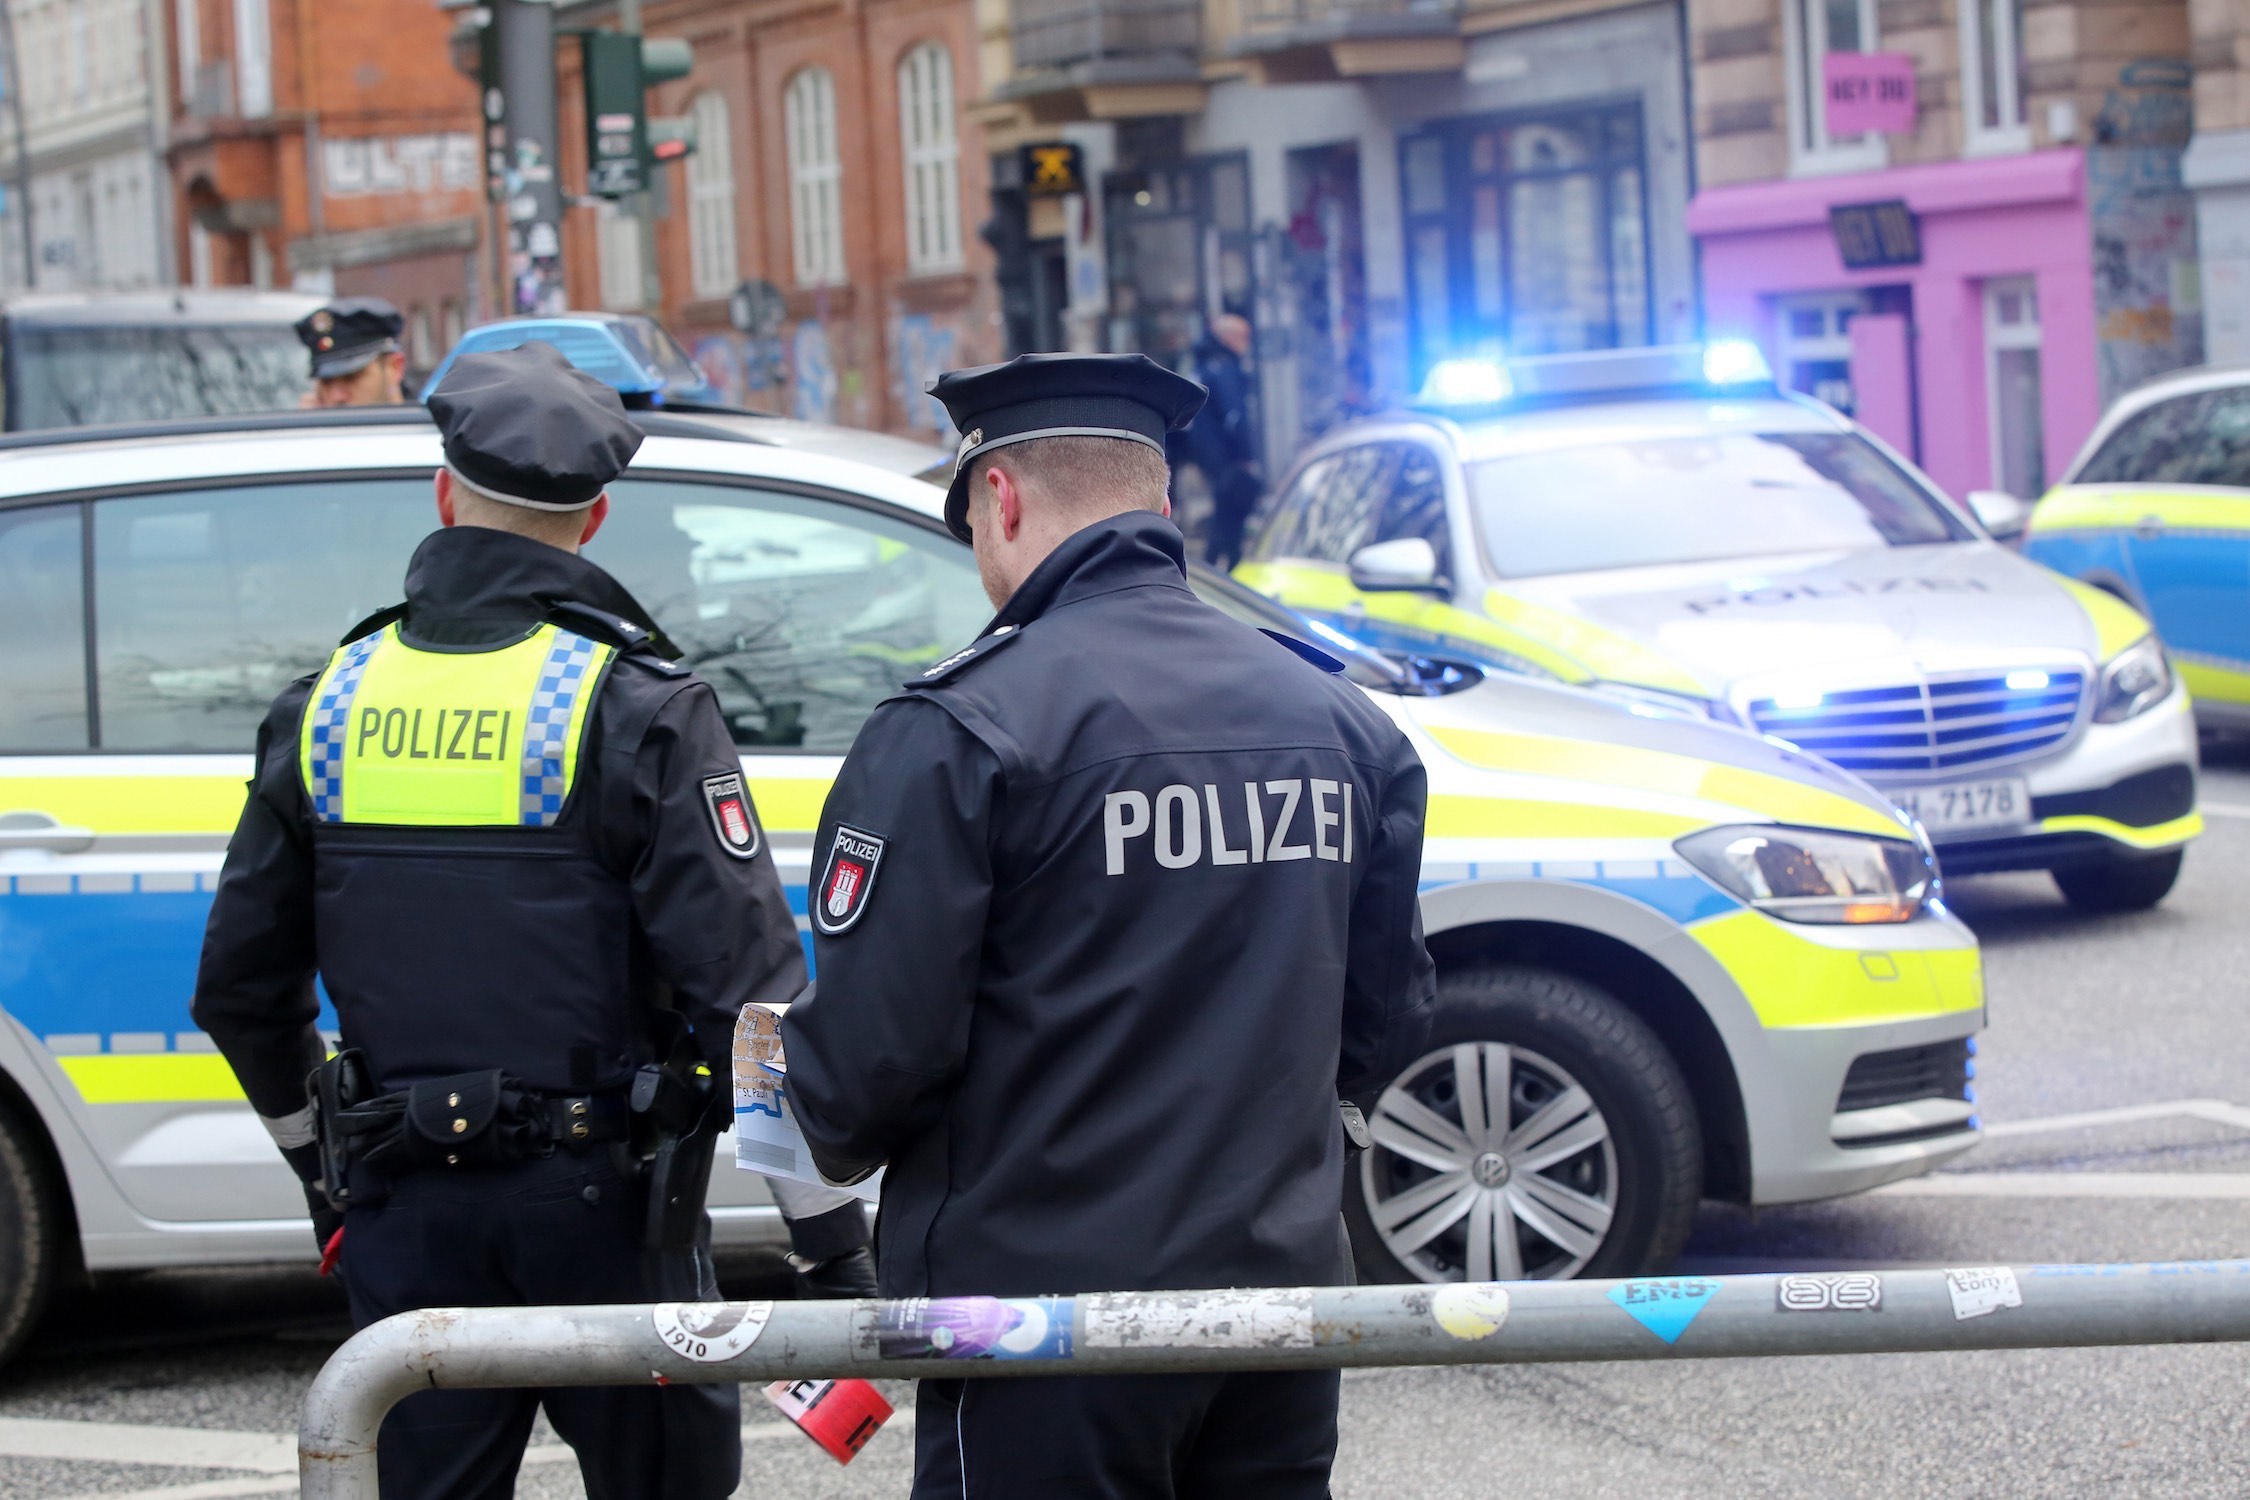  مكافحة الإرهاب .. نماذج من عنف اليمين المتطرّف في ألمانيا